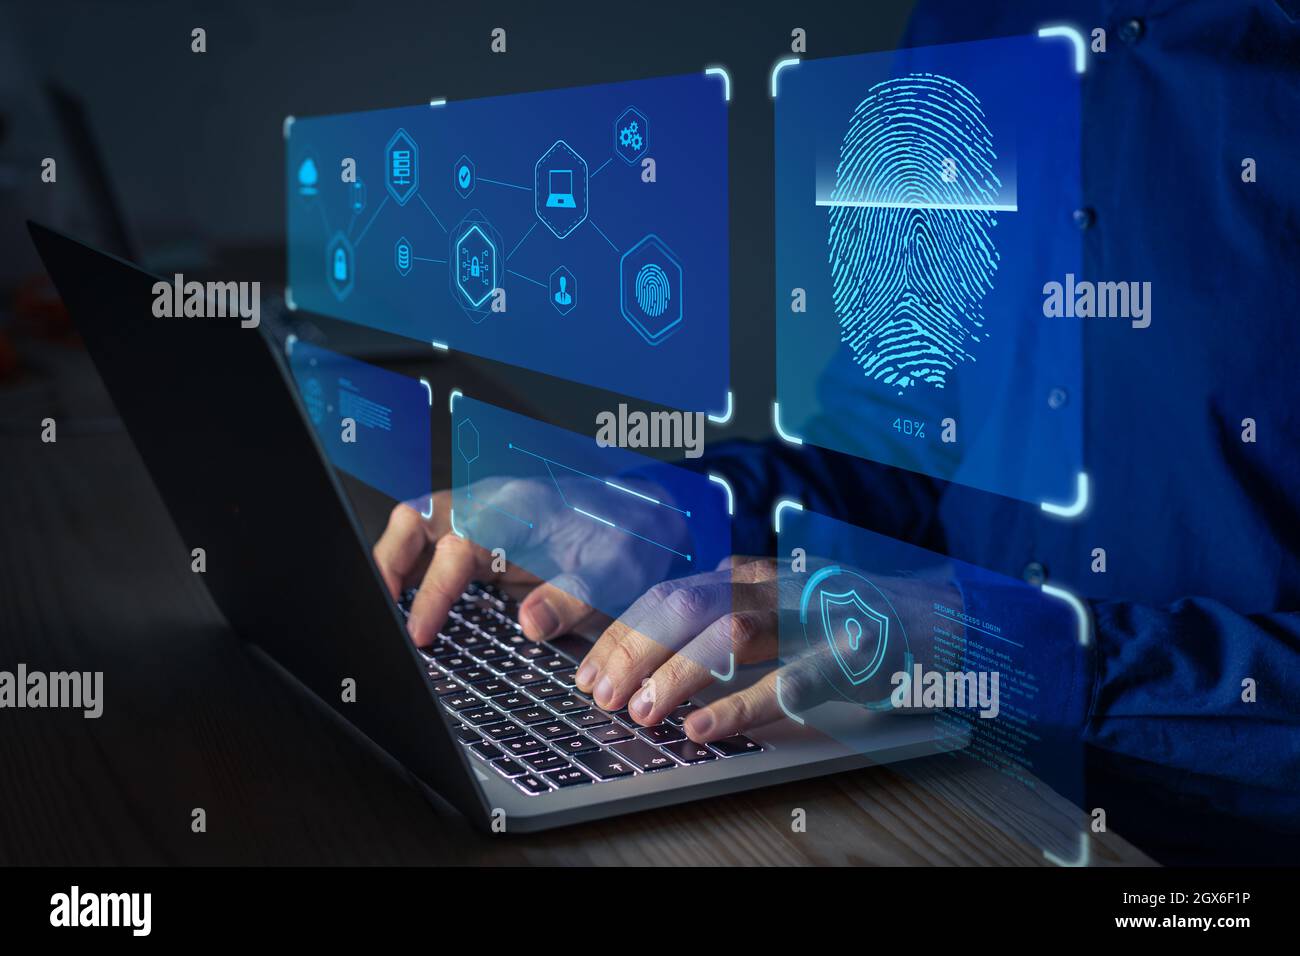 Scansione delle impronte digitali per un accesso sicuro alla rete dati protetta con dati biometrici. Persona che utilizza la tecnologia di autenticazione delle impronte digitali su un computer portatile t Foto Stock